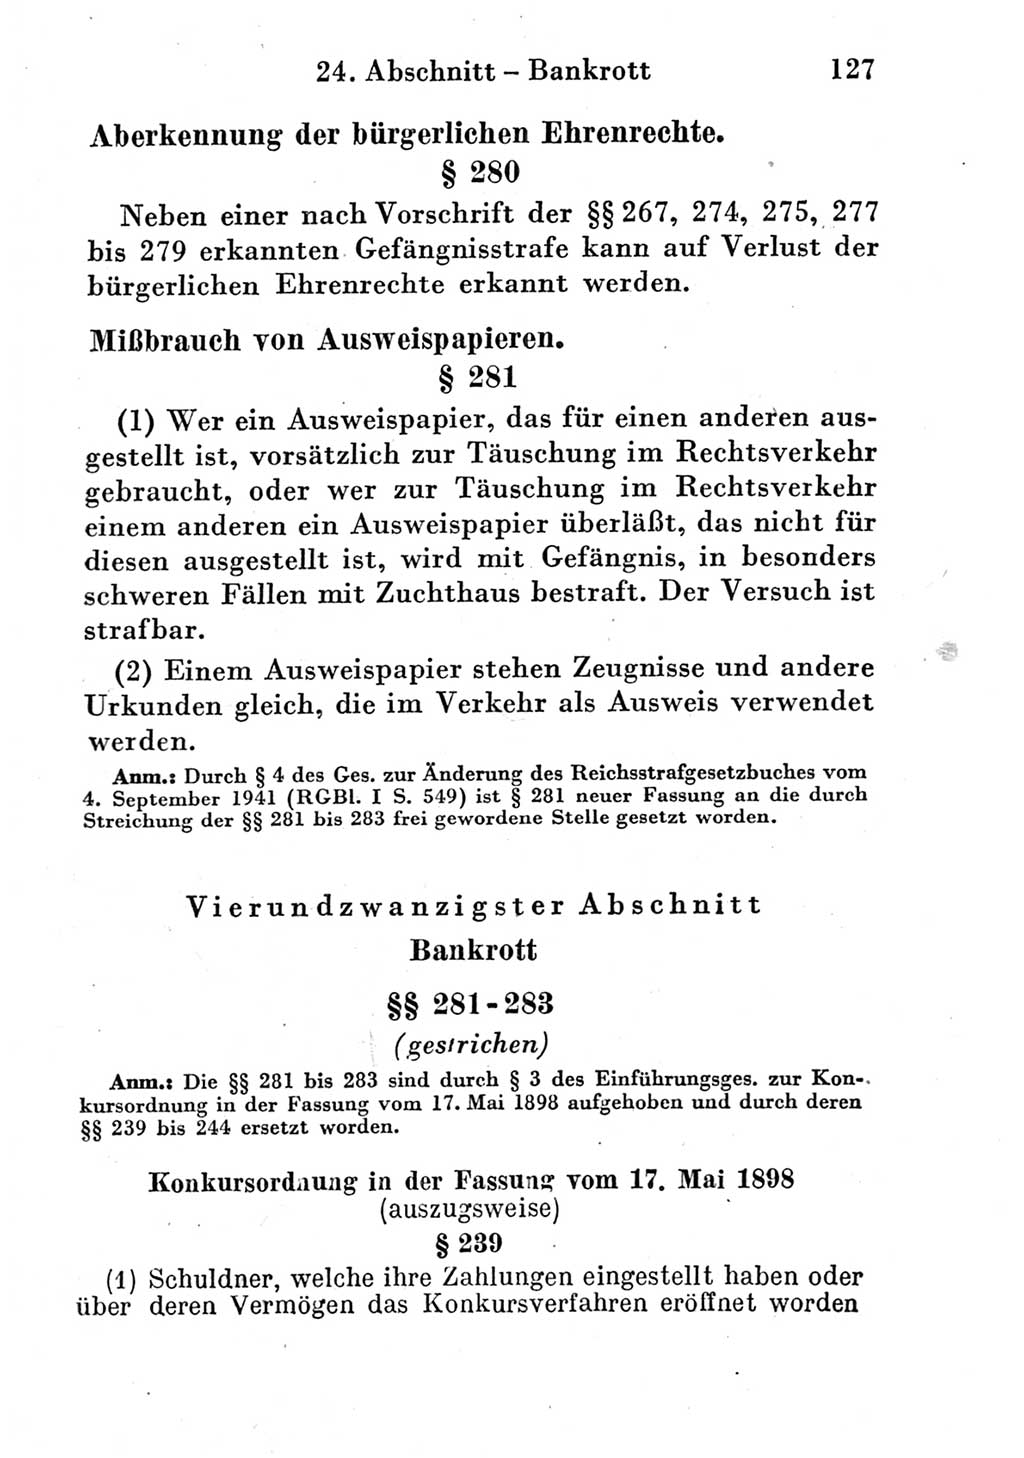 Strafgesetzbuch (StGB) und andere Strafgesetze [Deutsche Demokratische Republik (DDR)] 1951, Seite 127 (StGB Strafges. DDR 1951, S. 127)